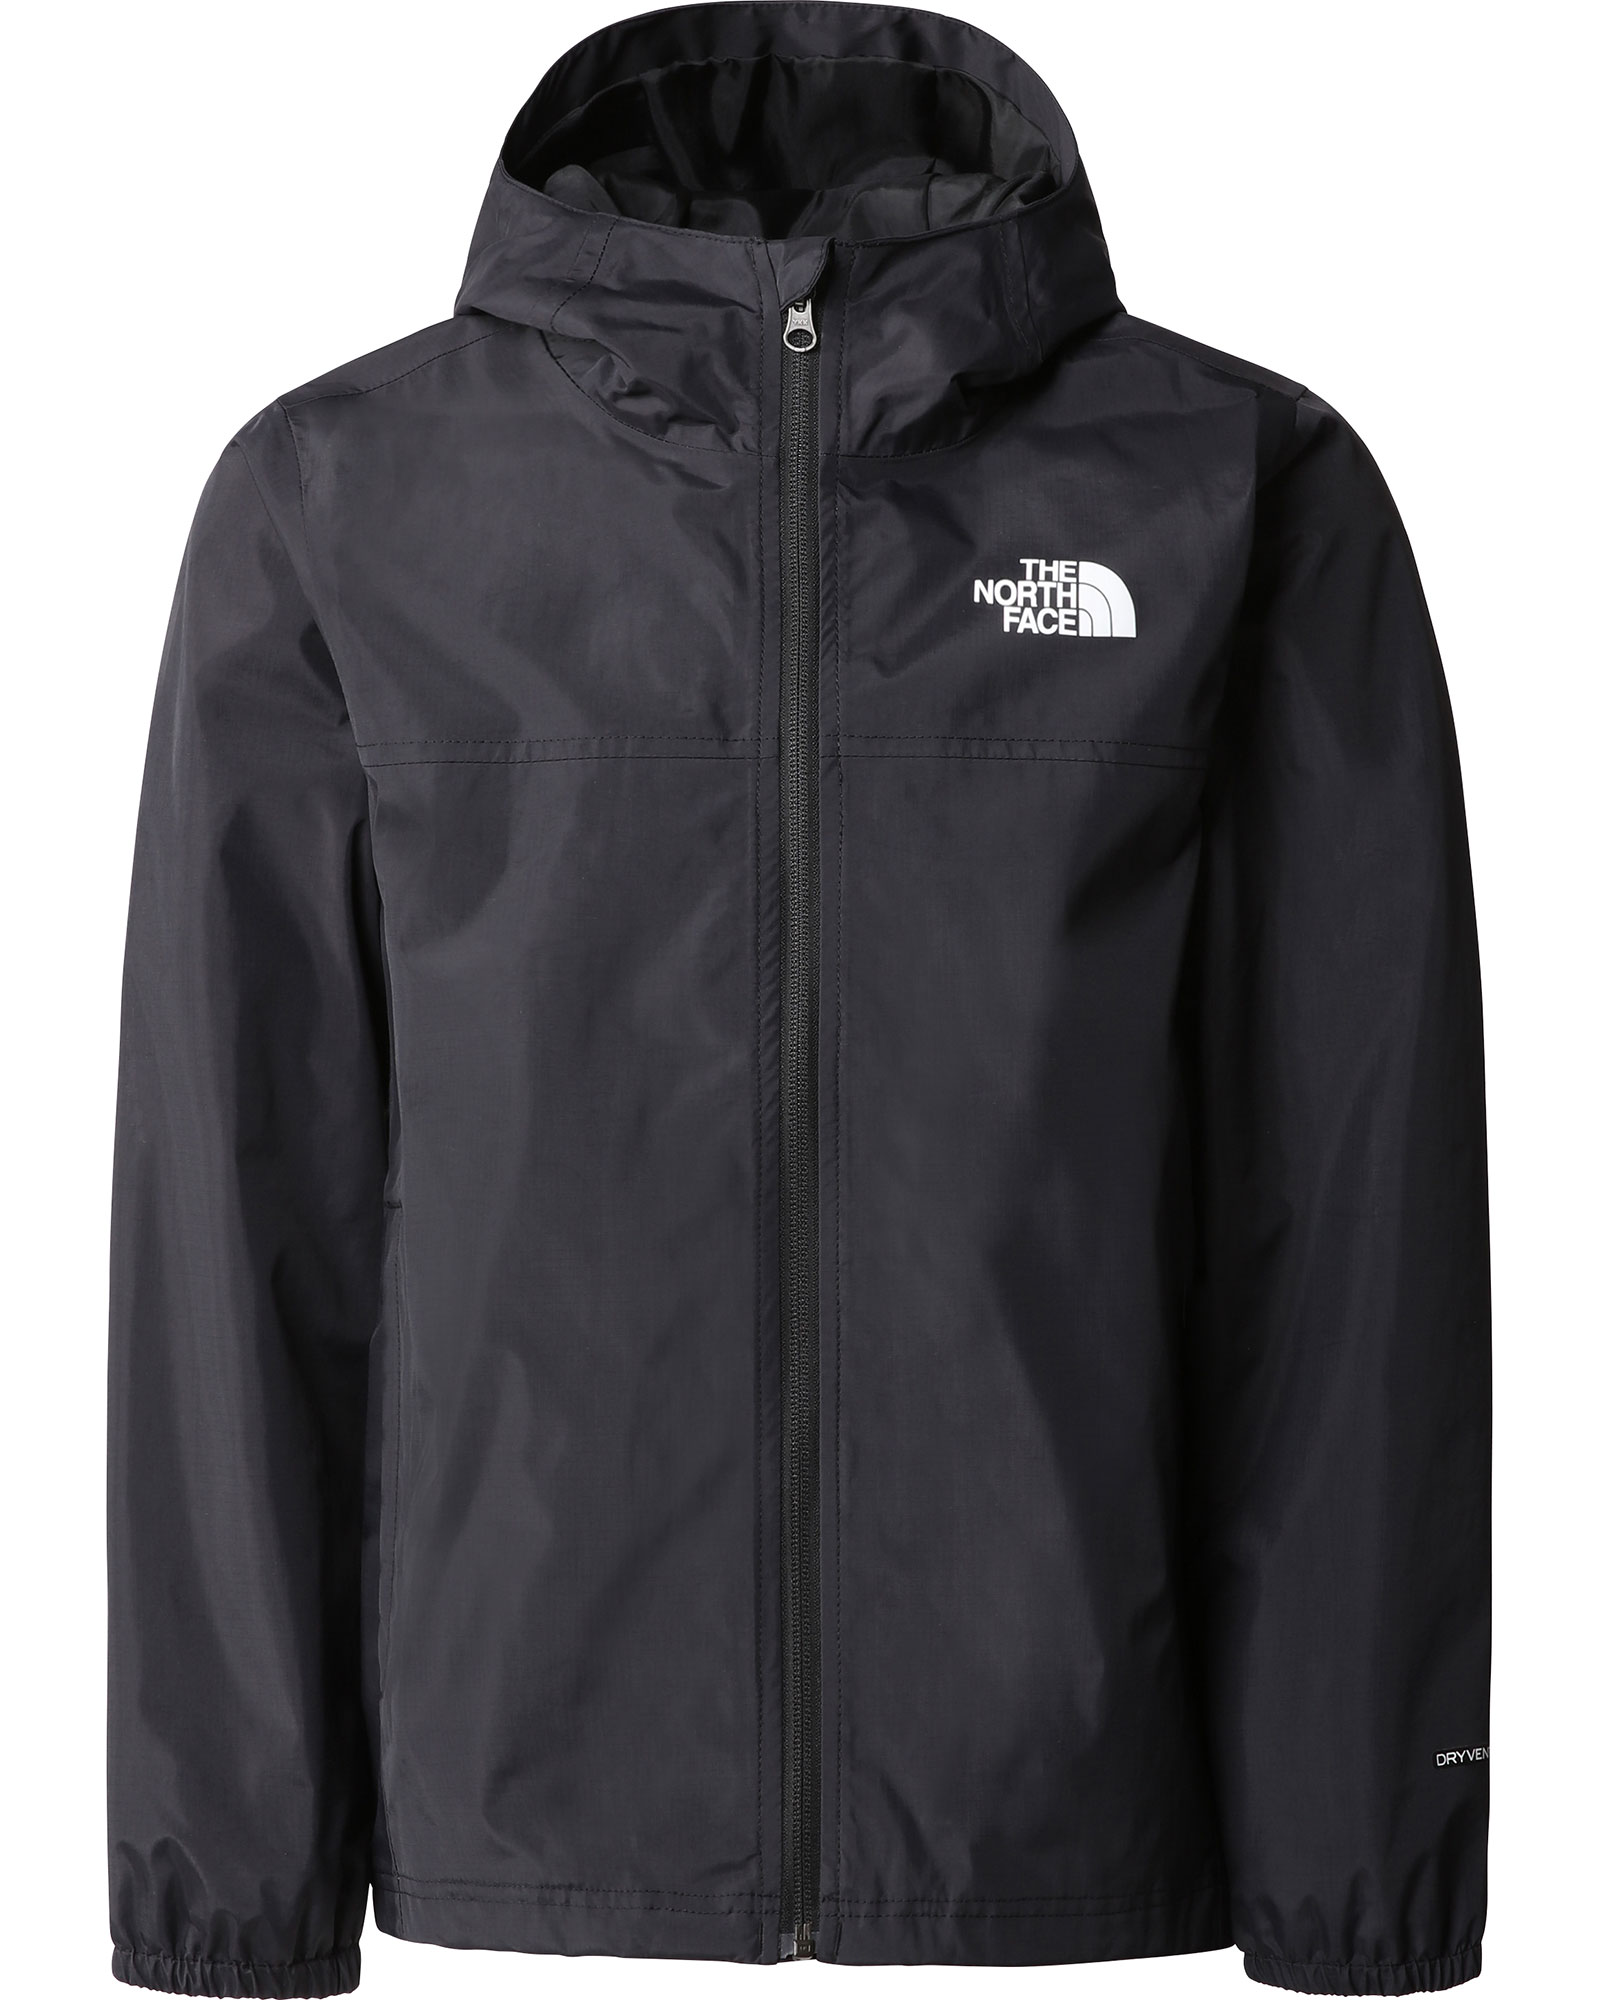 The North Face Teen Rainwear Shell Jacket - TNF Black S